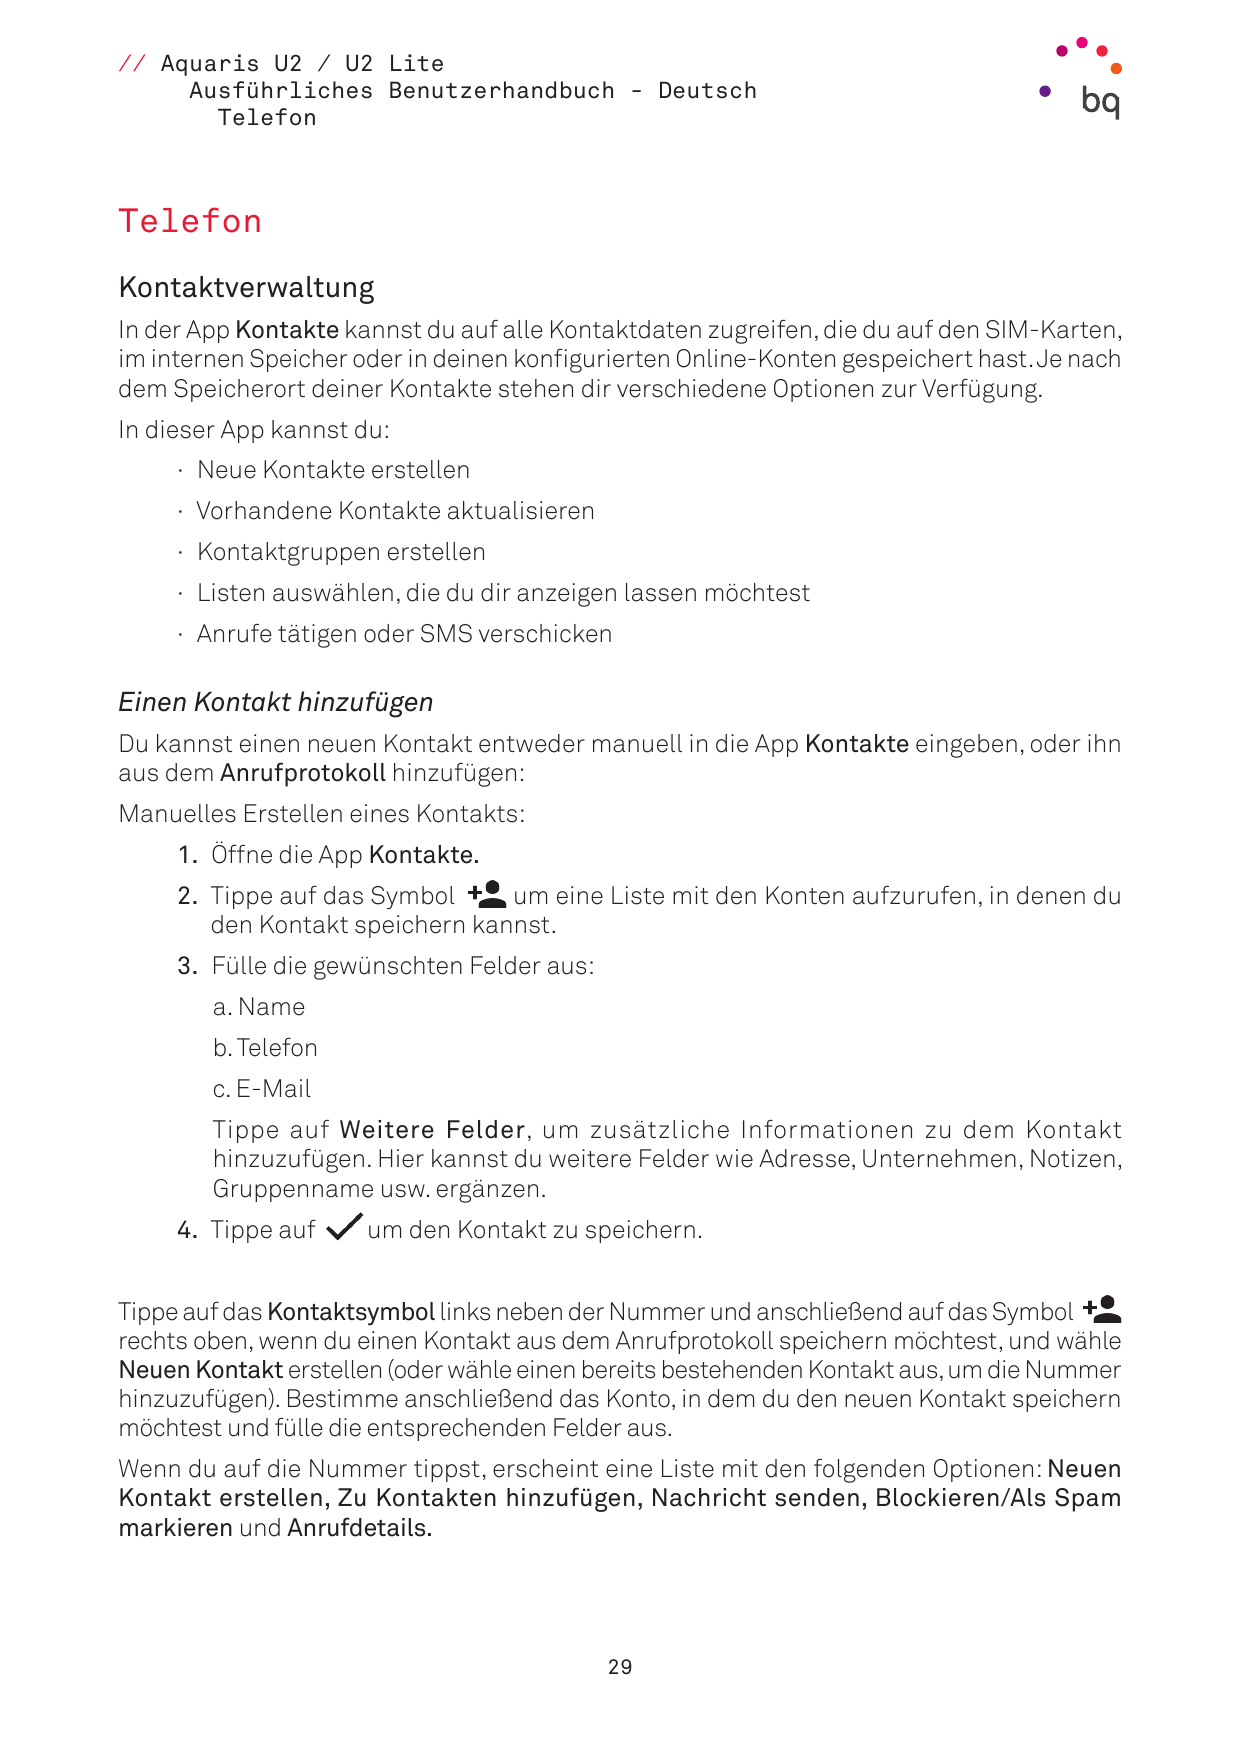 // Aquaris U2 / U2 LiteAusführliches Benutzerhandbuch - DeutschTelefonTelefonKontaktverwaltungIn der App Kontakte kannst du auf 